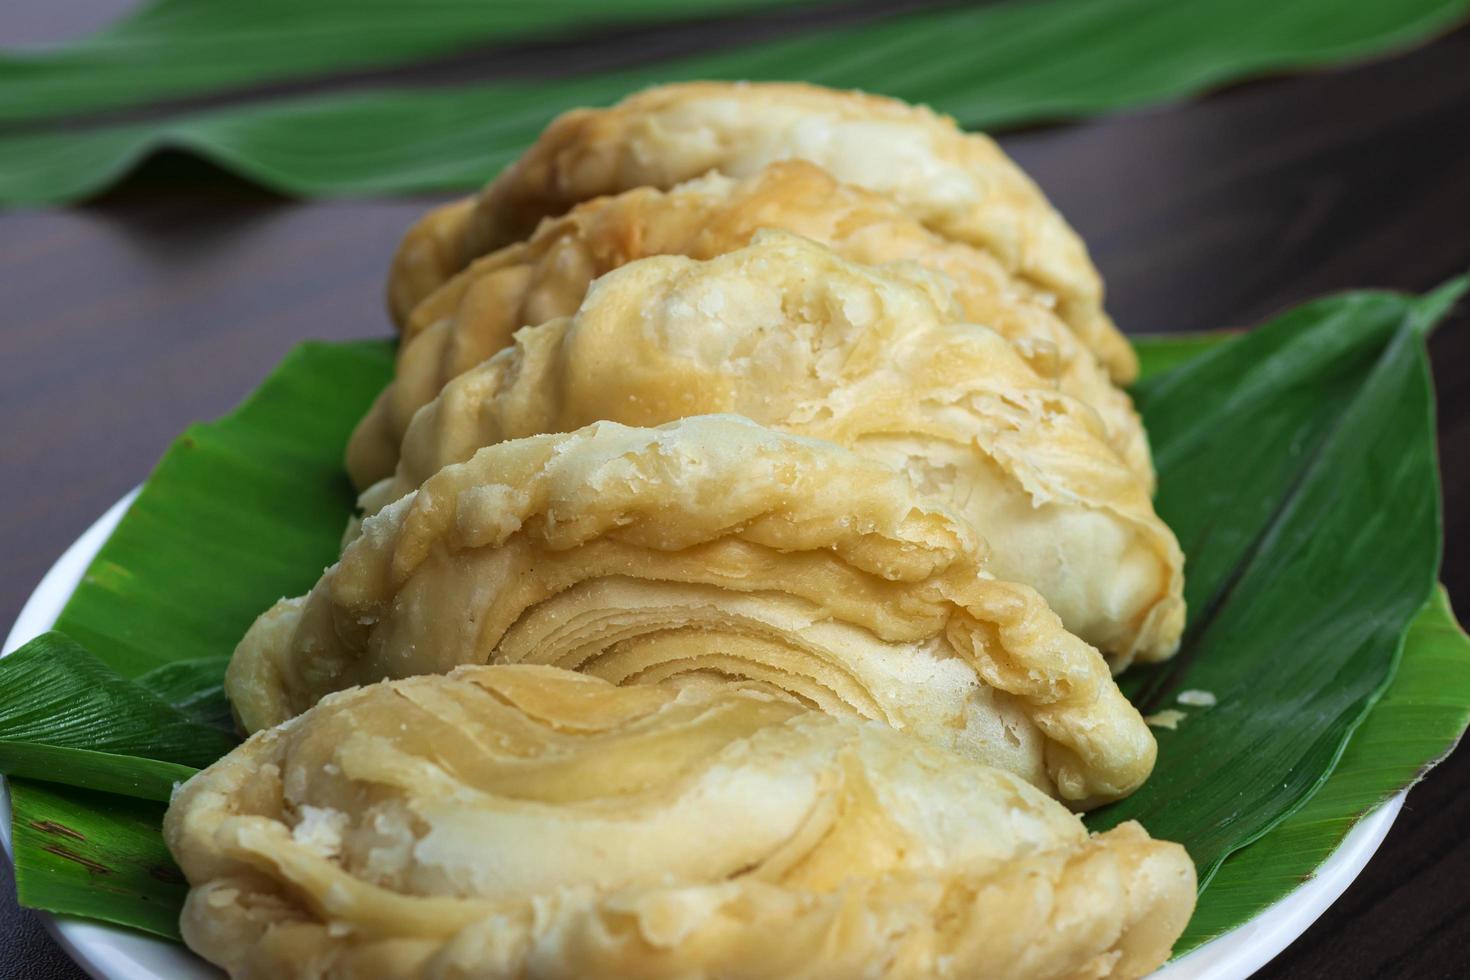 malaysia populär och traditionell snack karipap fylld med potatisfyllningar. foto